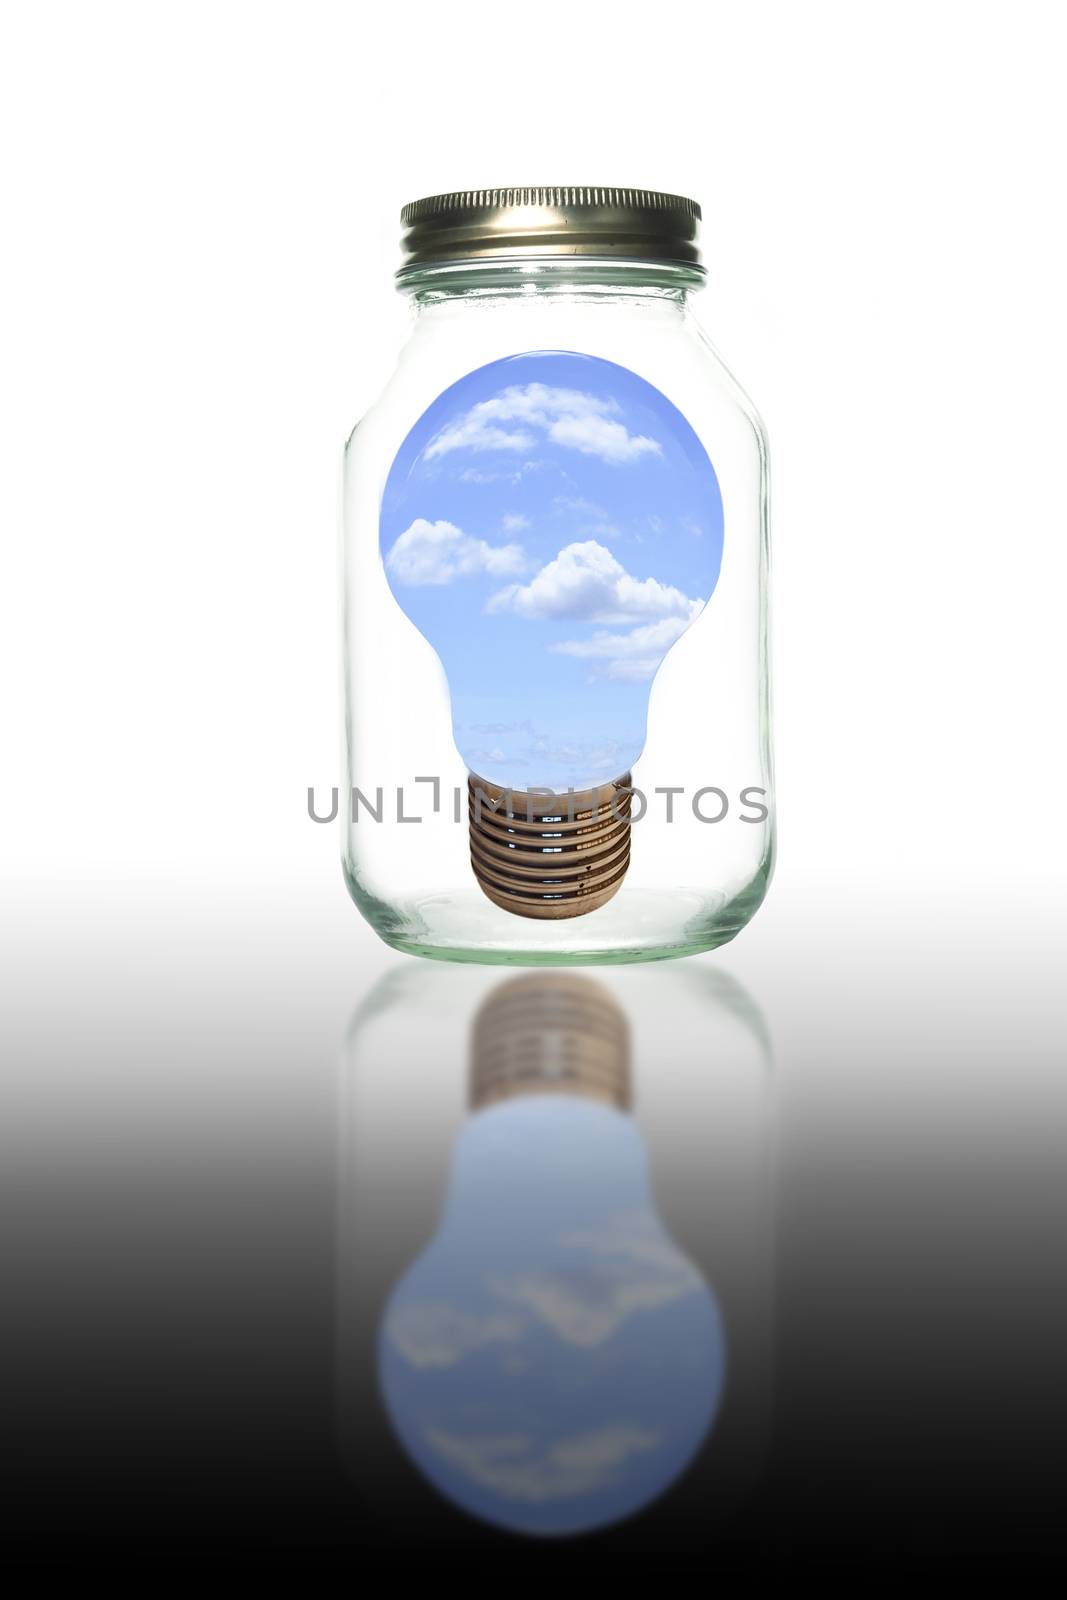 Blub light in bottle isolate